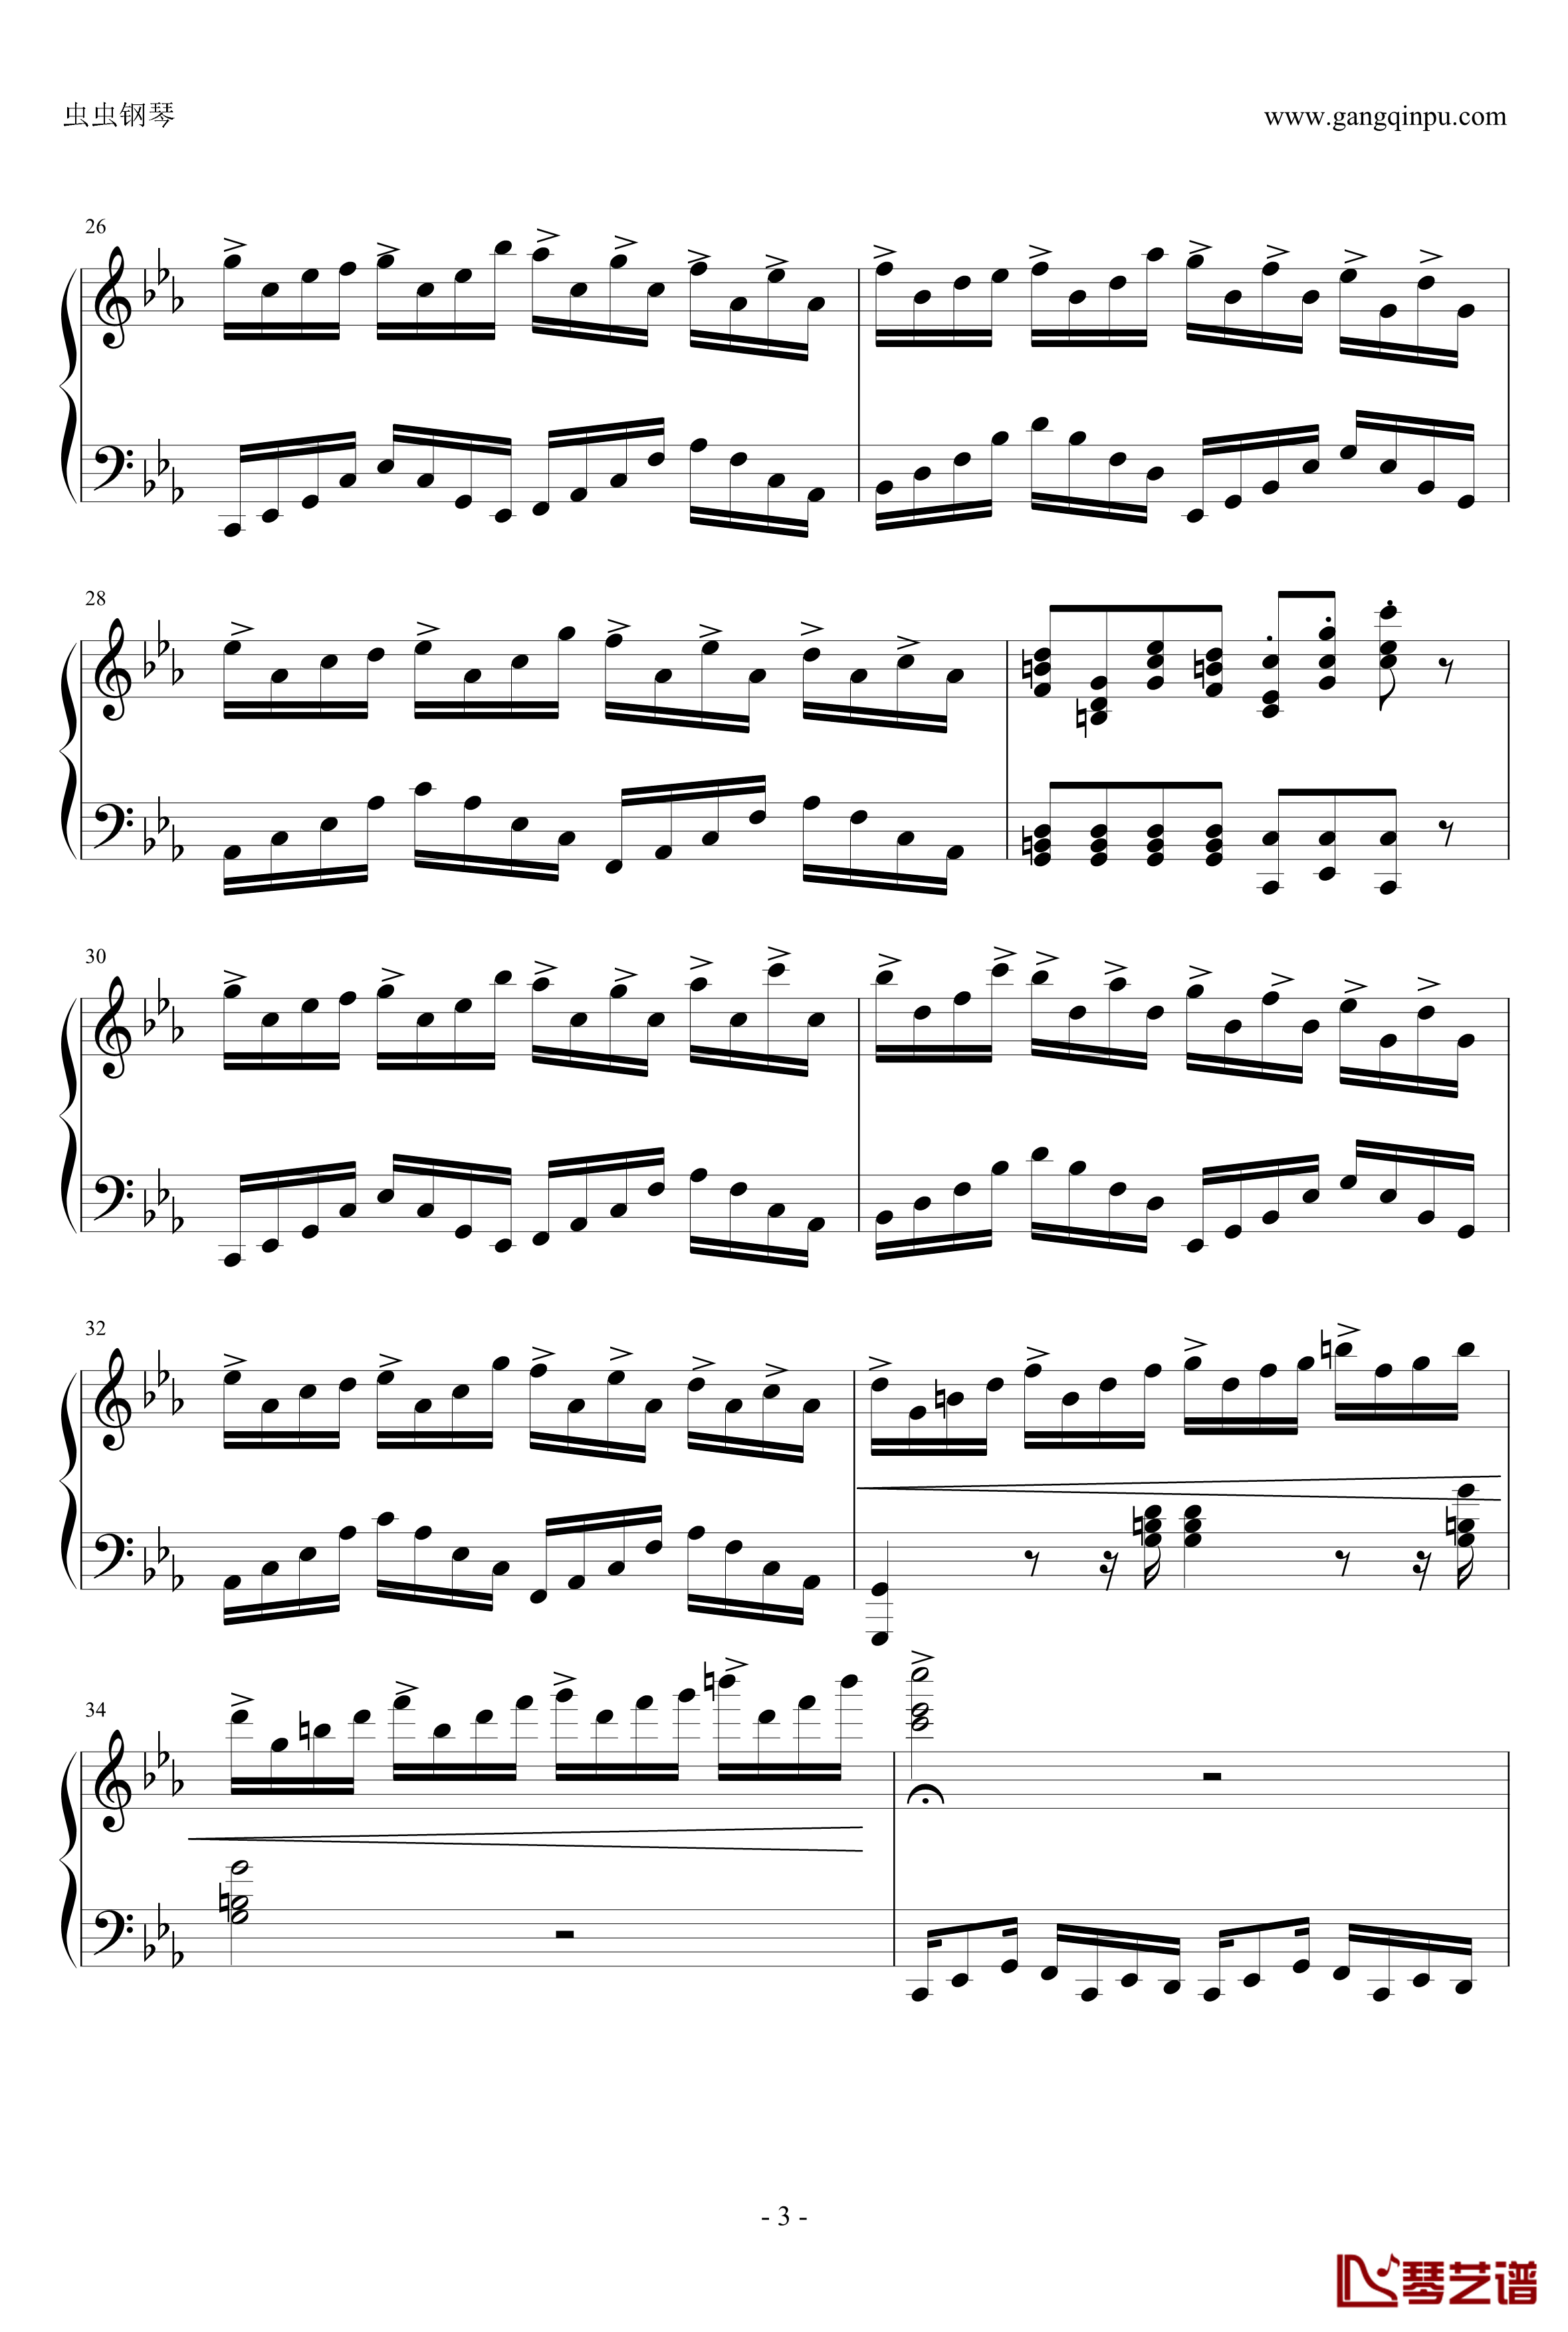 克罗地亚狂想曲钢琴谱-完美版-马克西姆-Maksim·Mrvica3